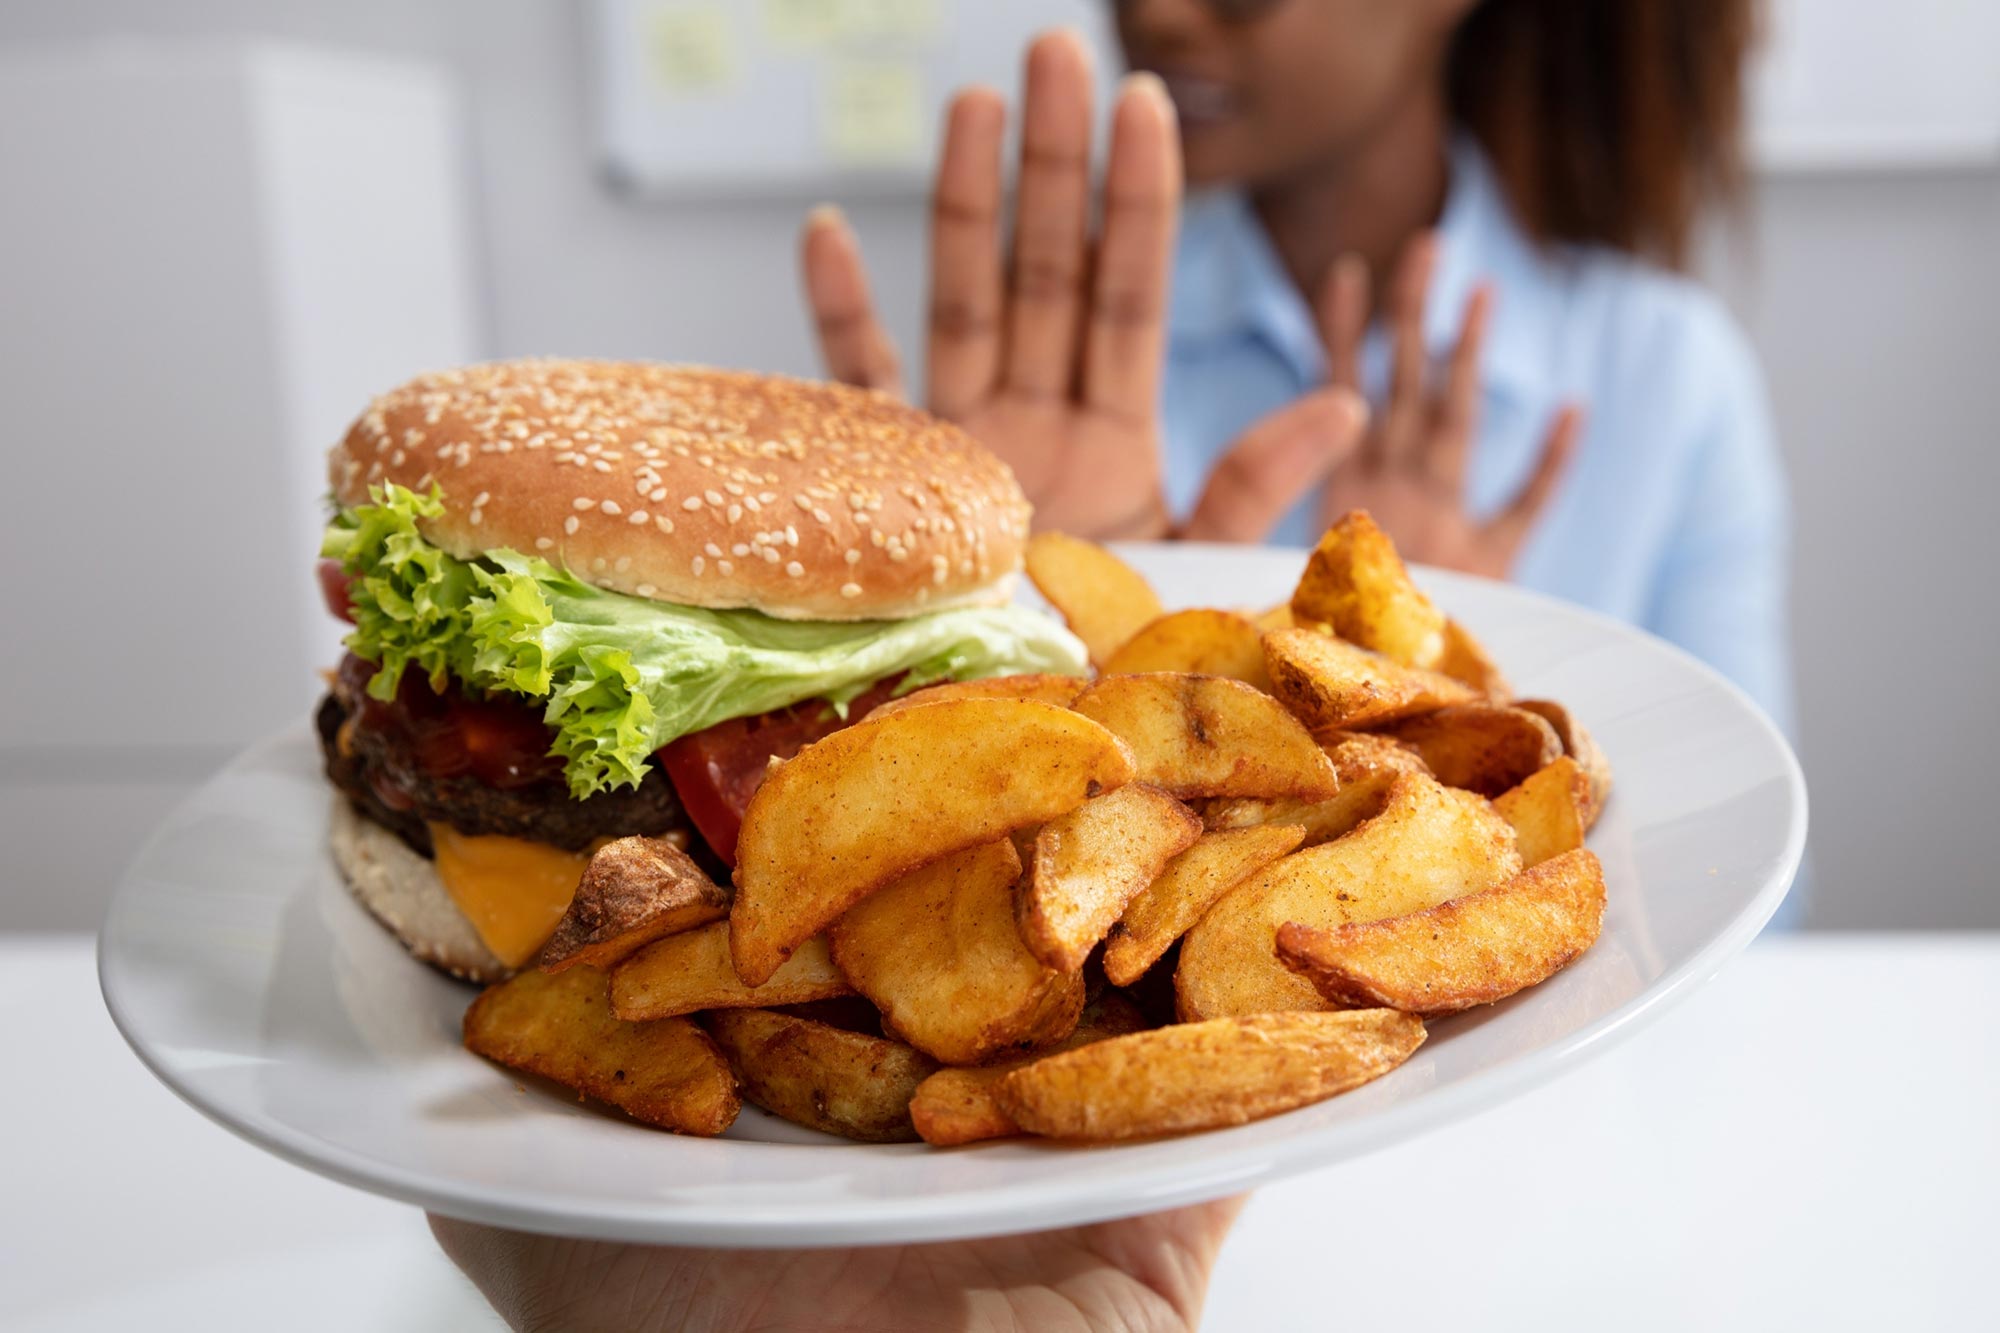 Nueva intervención para perder peso se enfoca en el deseo innato de comer